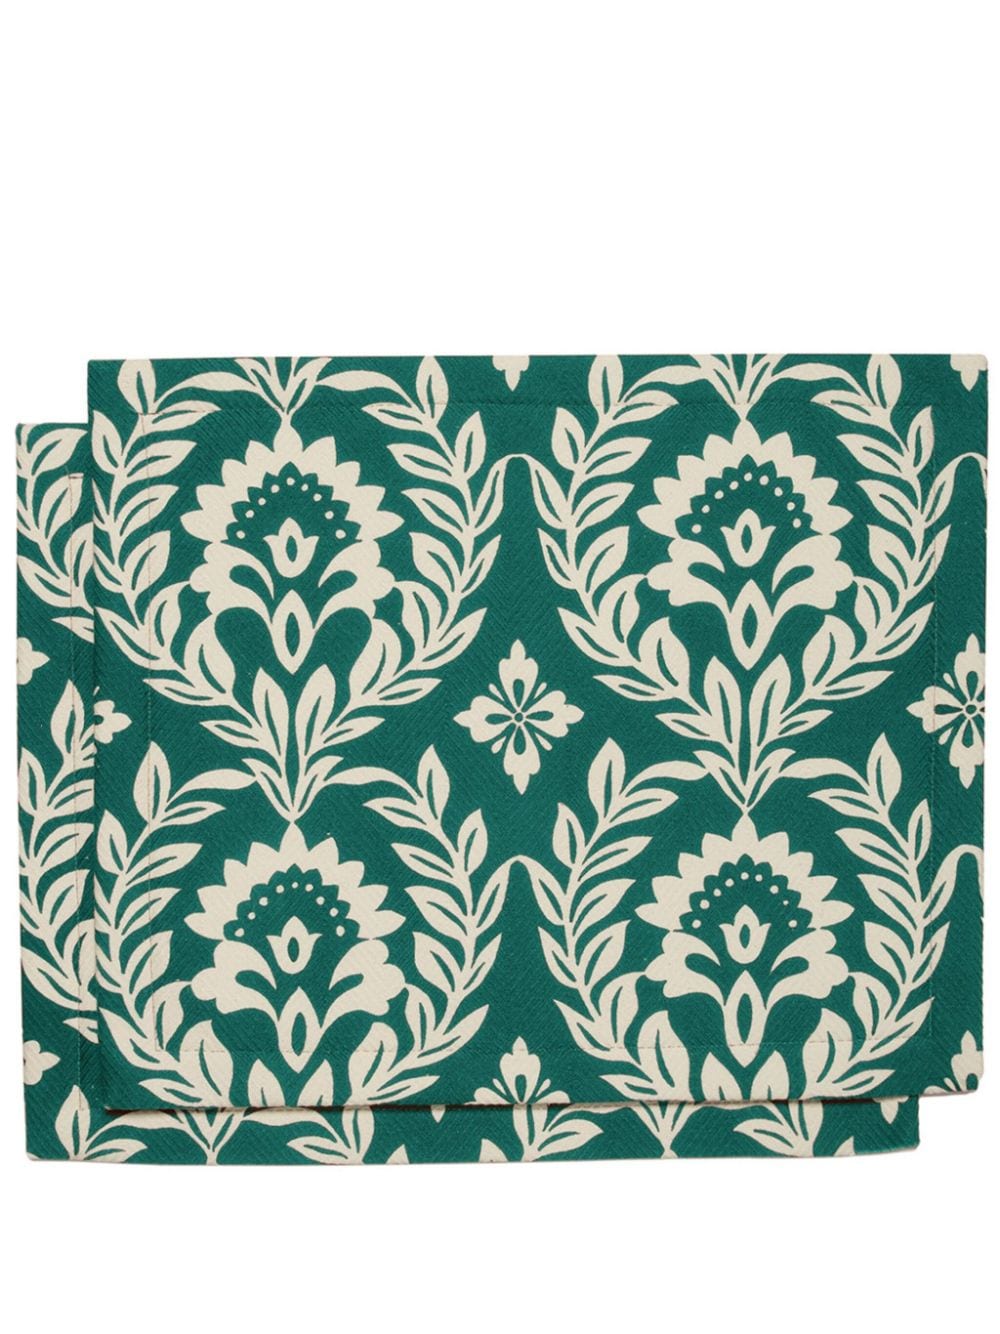 La DoubleJ leaf-print linen placemats (set of 2) - Green von La DoubleJ